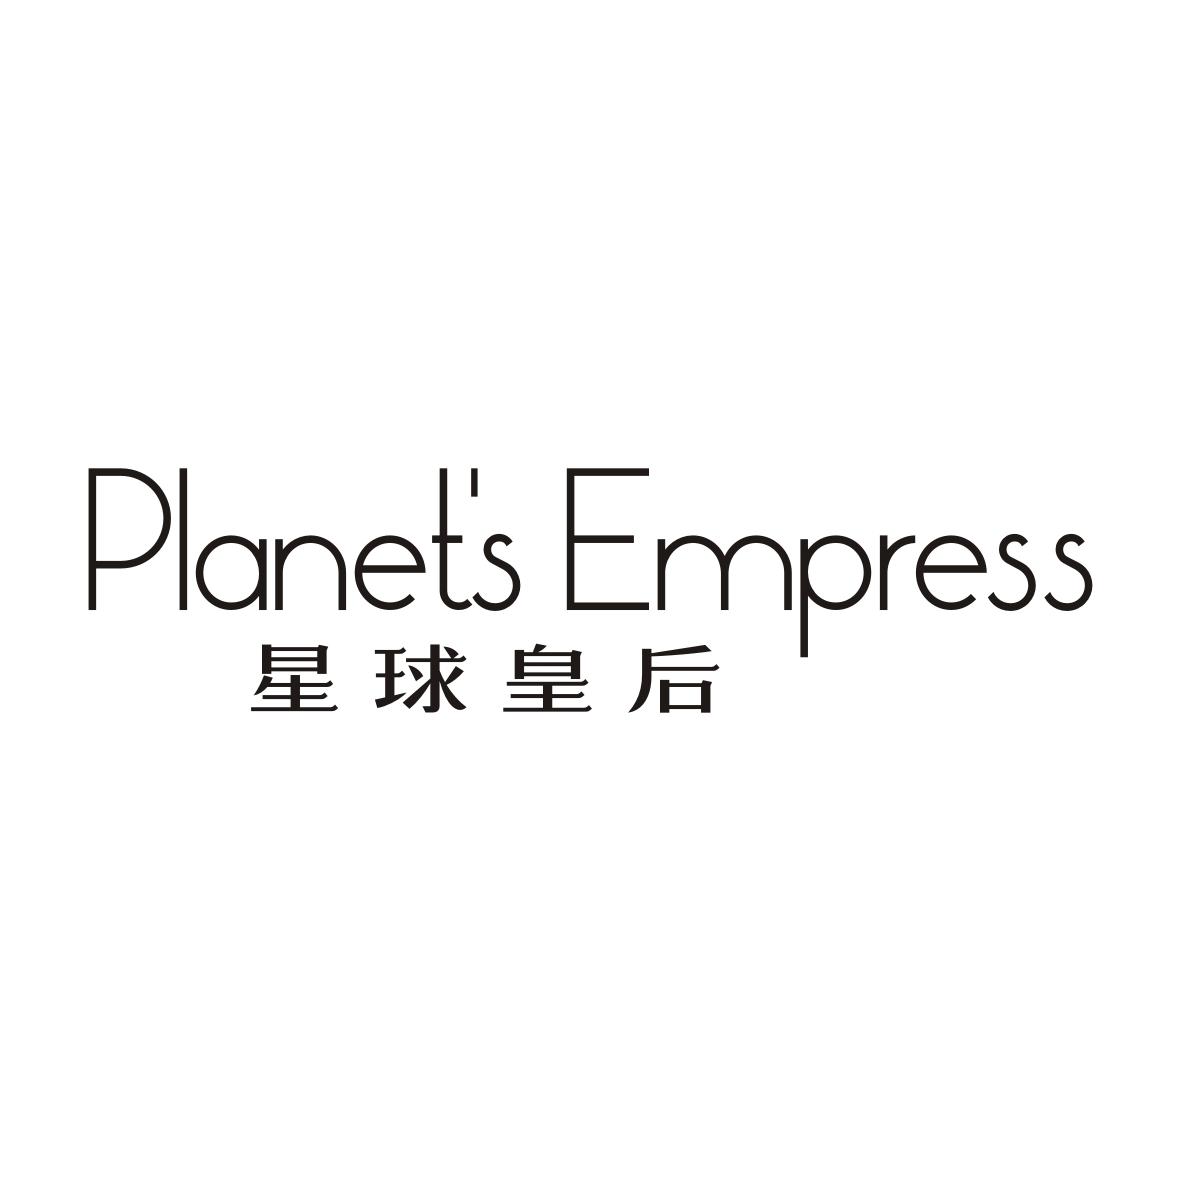 推荐05类-医药保健星球皇后 PLANET'S EMPRESS商标转让